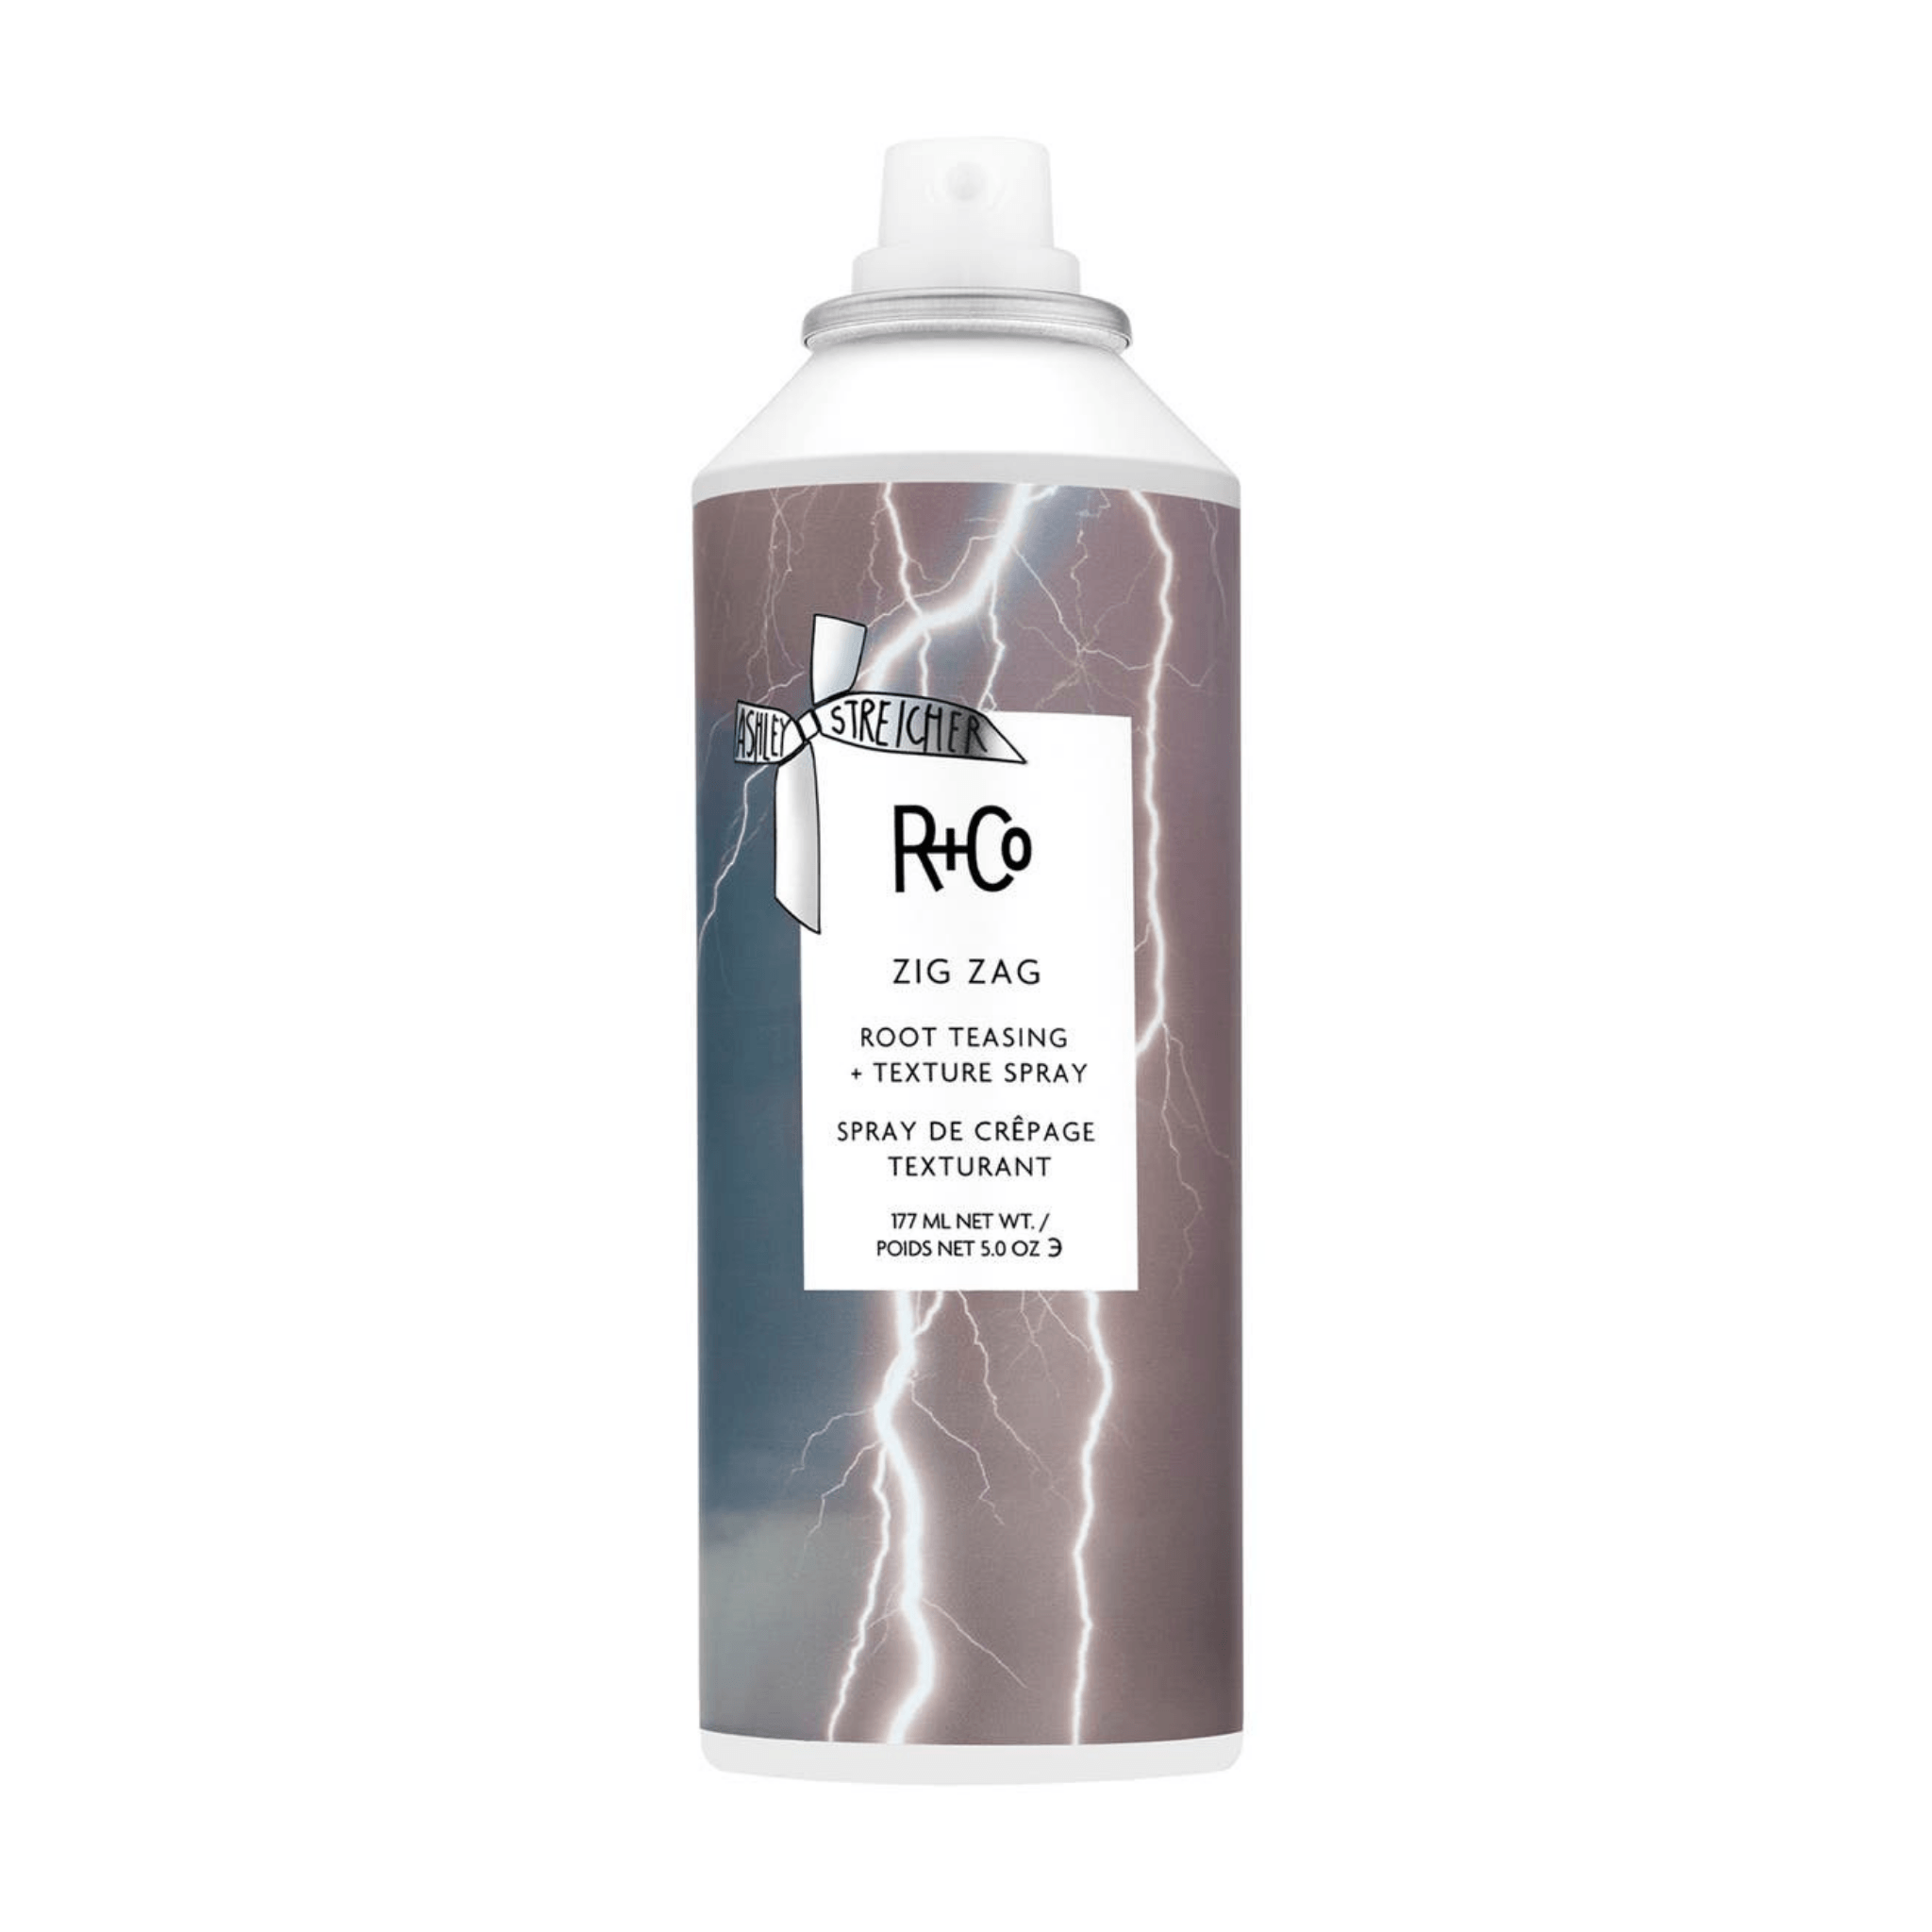 R+Co. Zig Zag Spray de Crêpage Texturant - 177 ml (en solde) - Concept C. Shop